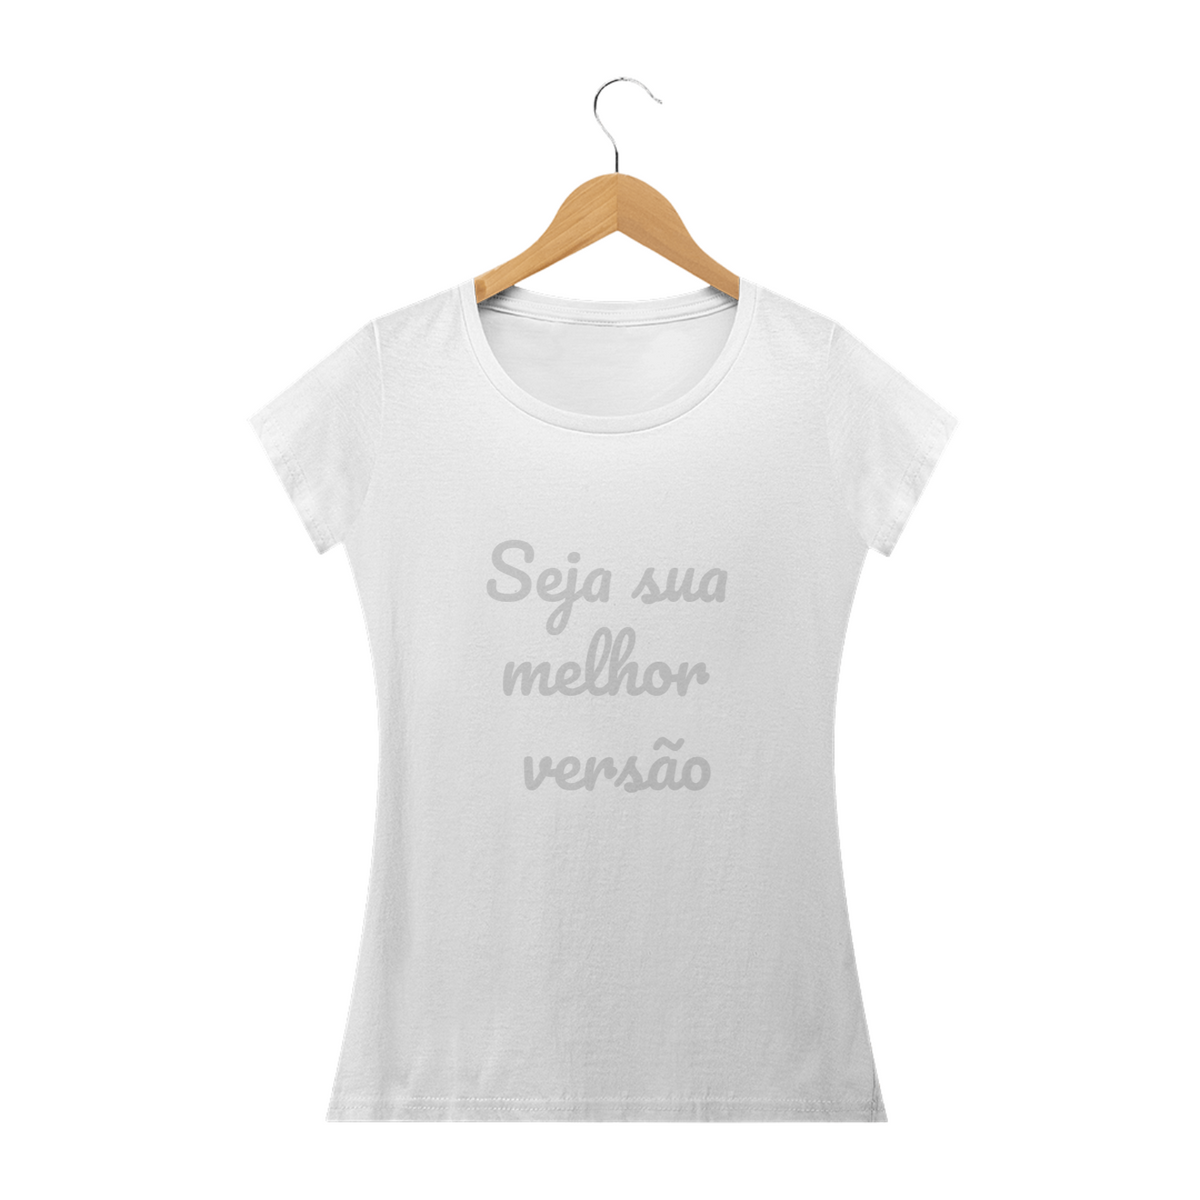 Nome do produto: Camisas femininas